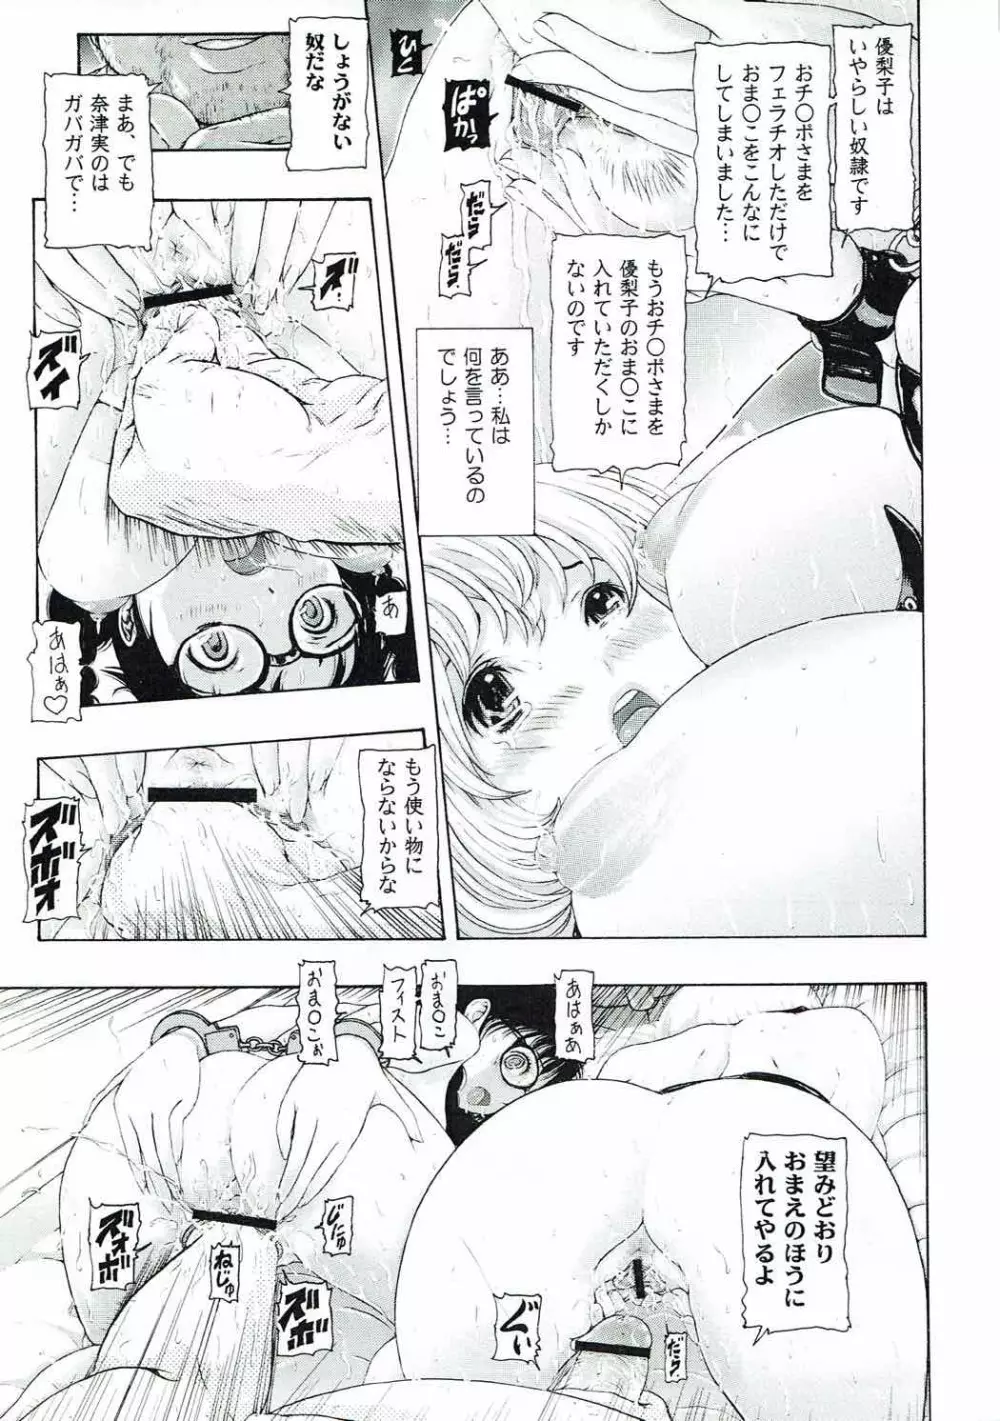 [け゜ぴけ゜ぴ (ぬャカな)] MANKOKU漫画家(とアシスタント)残酷物語 (バクマン。) 22ページ